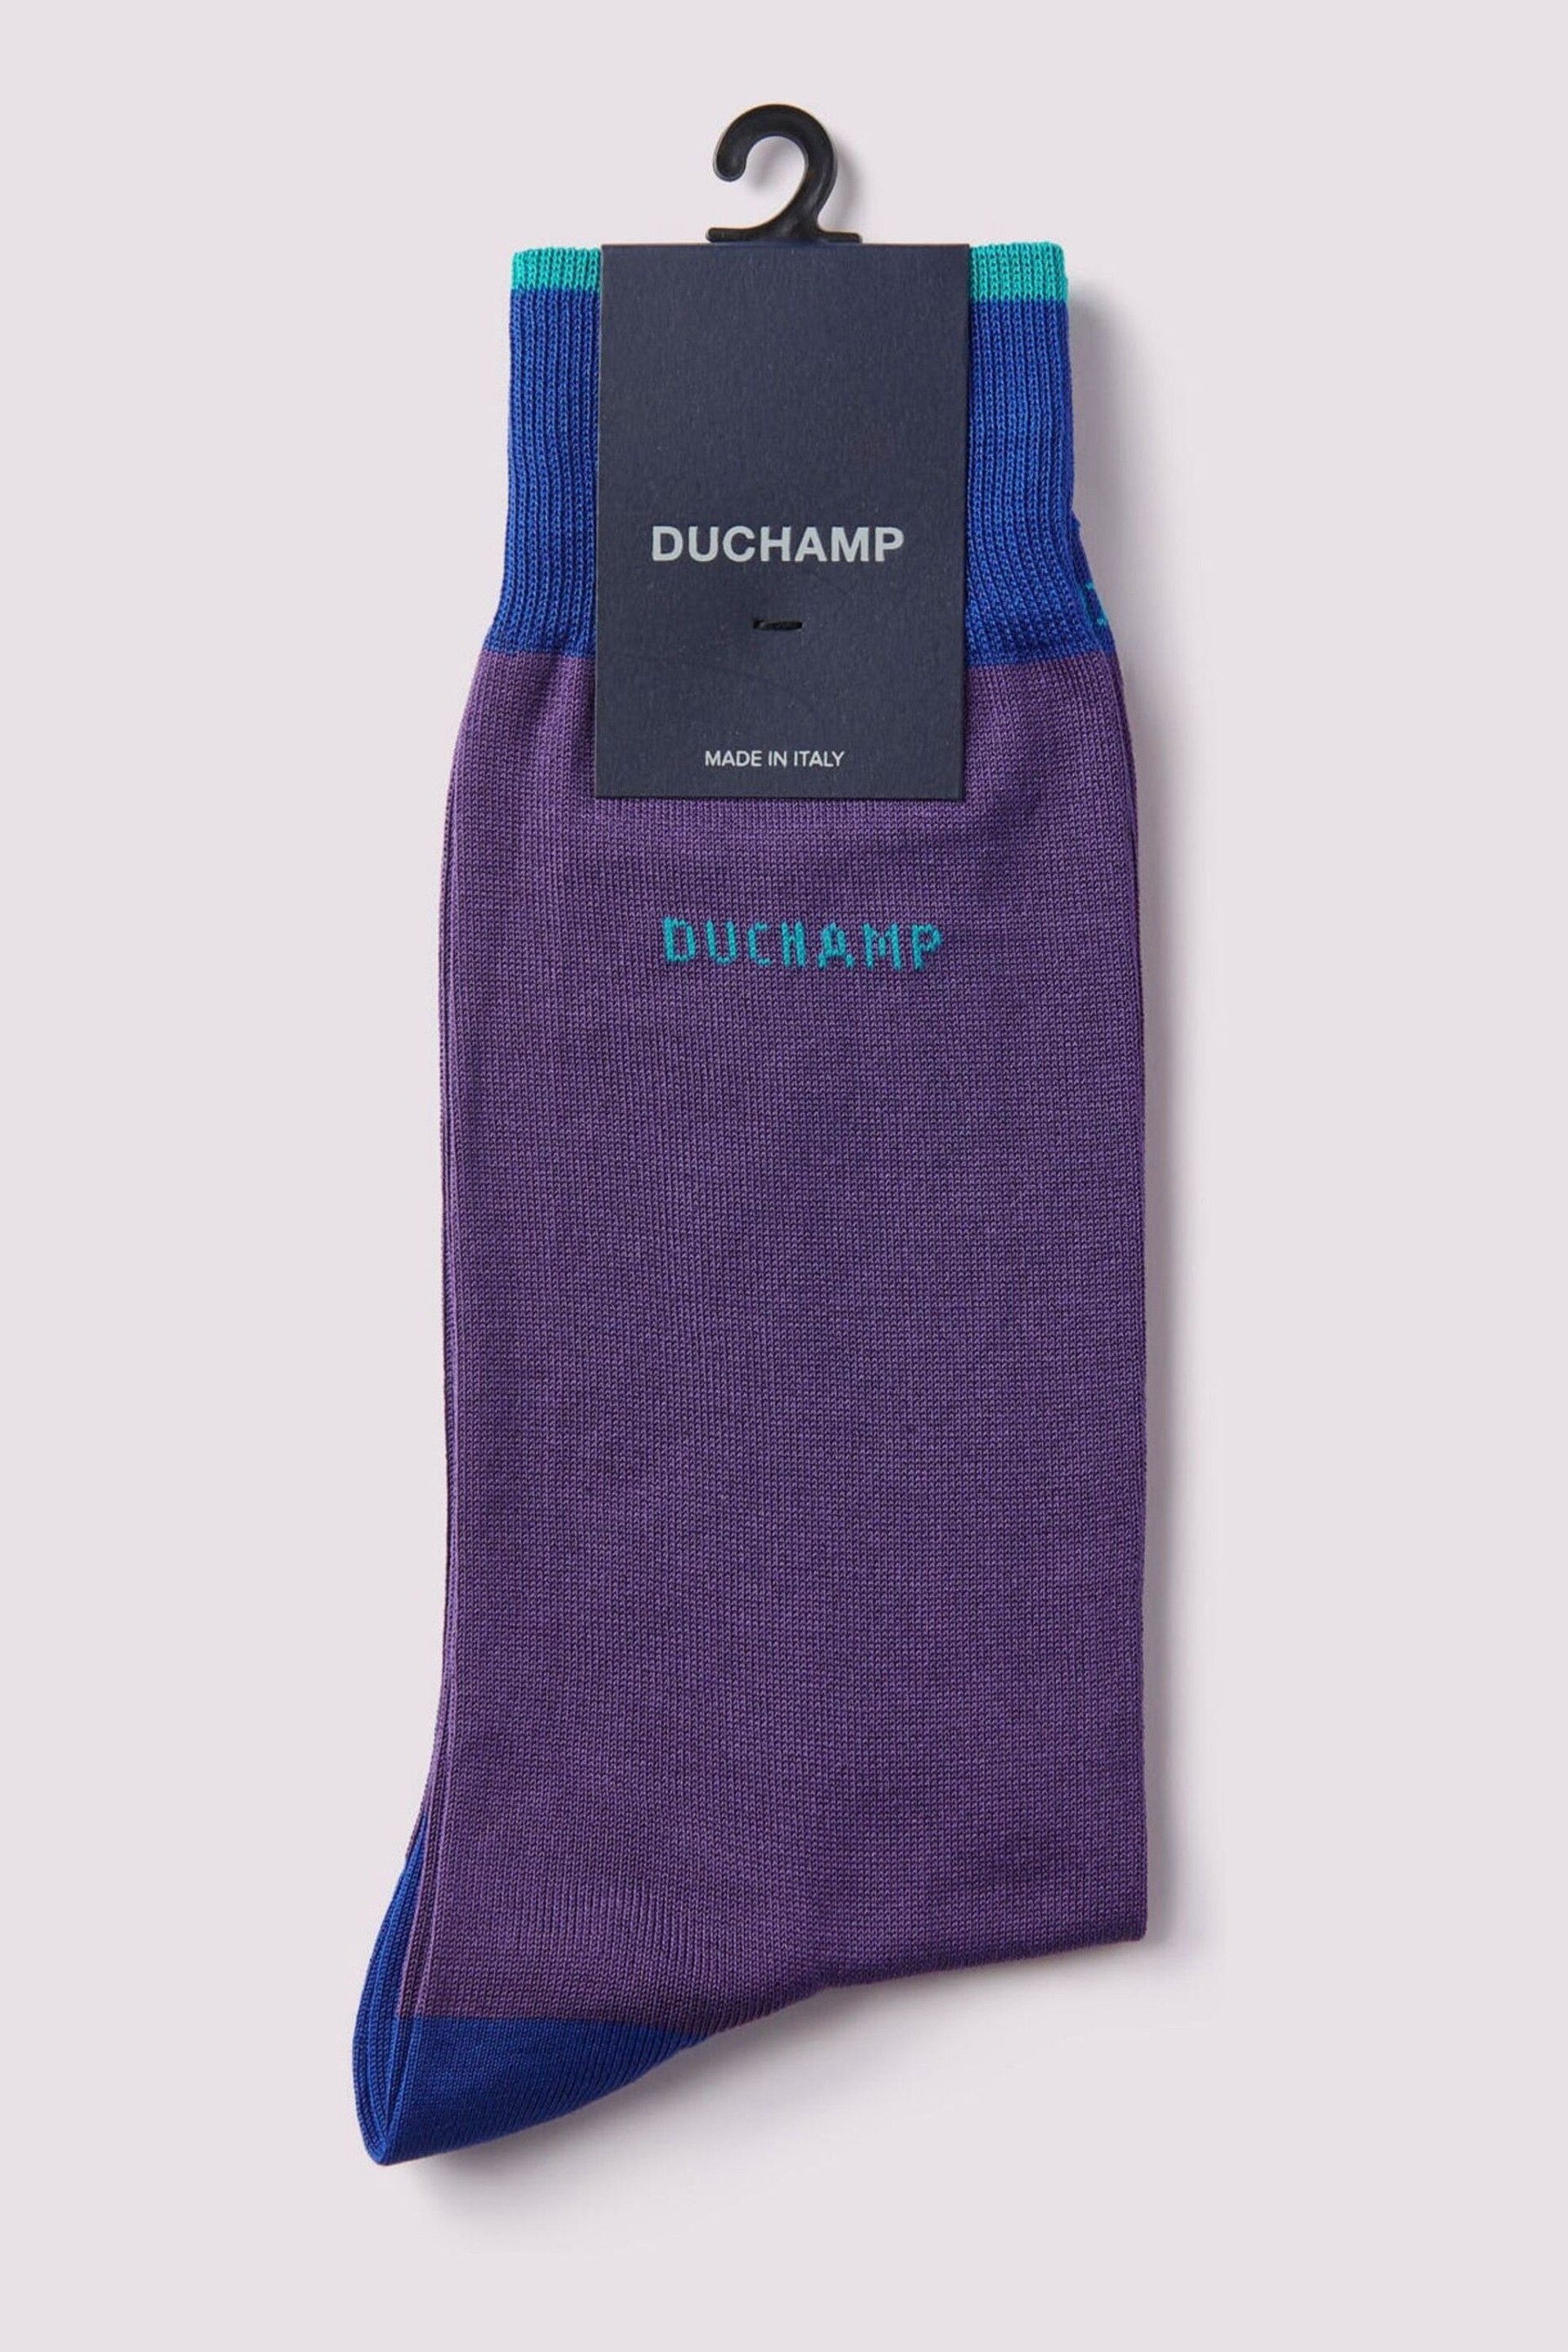 Duchamp Purple Heel Toe Socks - Image 1 of 3